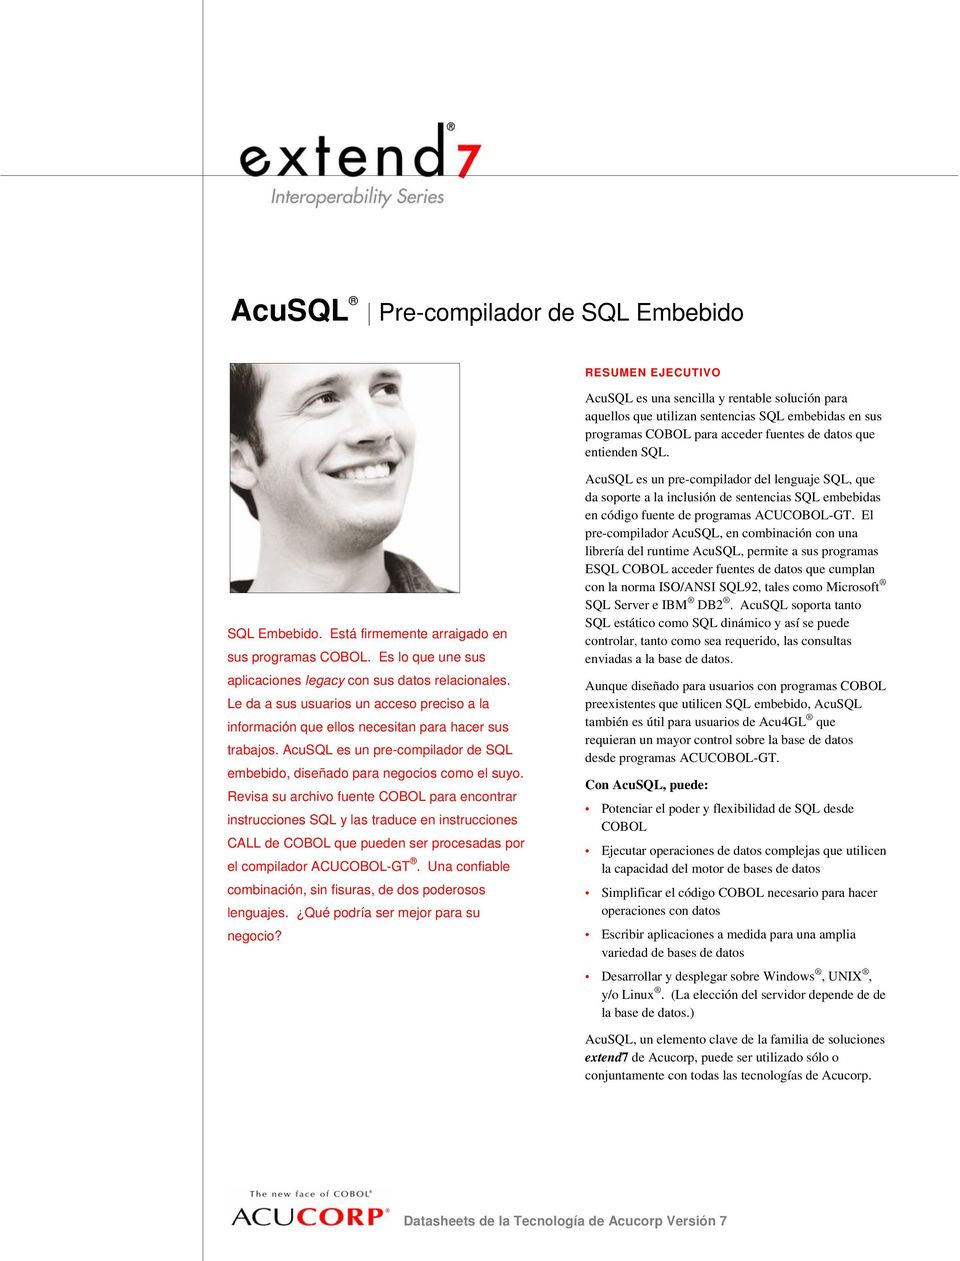 Le da a sus usuarios un acceso preciso a la información que ellos necesitan para hacer sus trabajos. AcuSQL es un pre-compilador de SQL embebido, diseñado para negocios como el suyo.